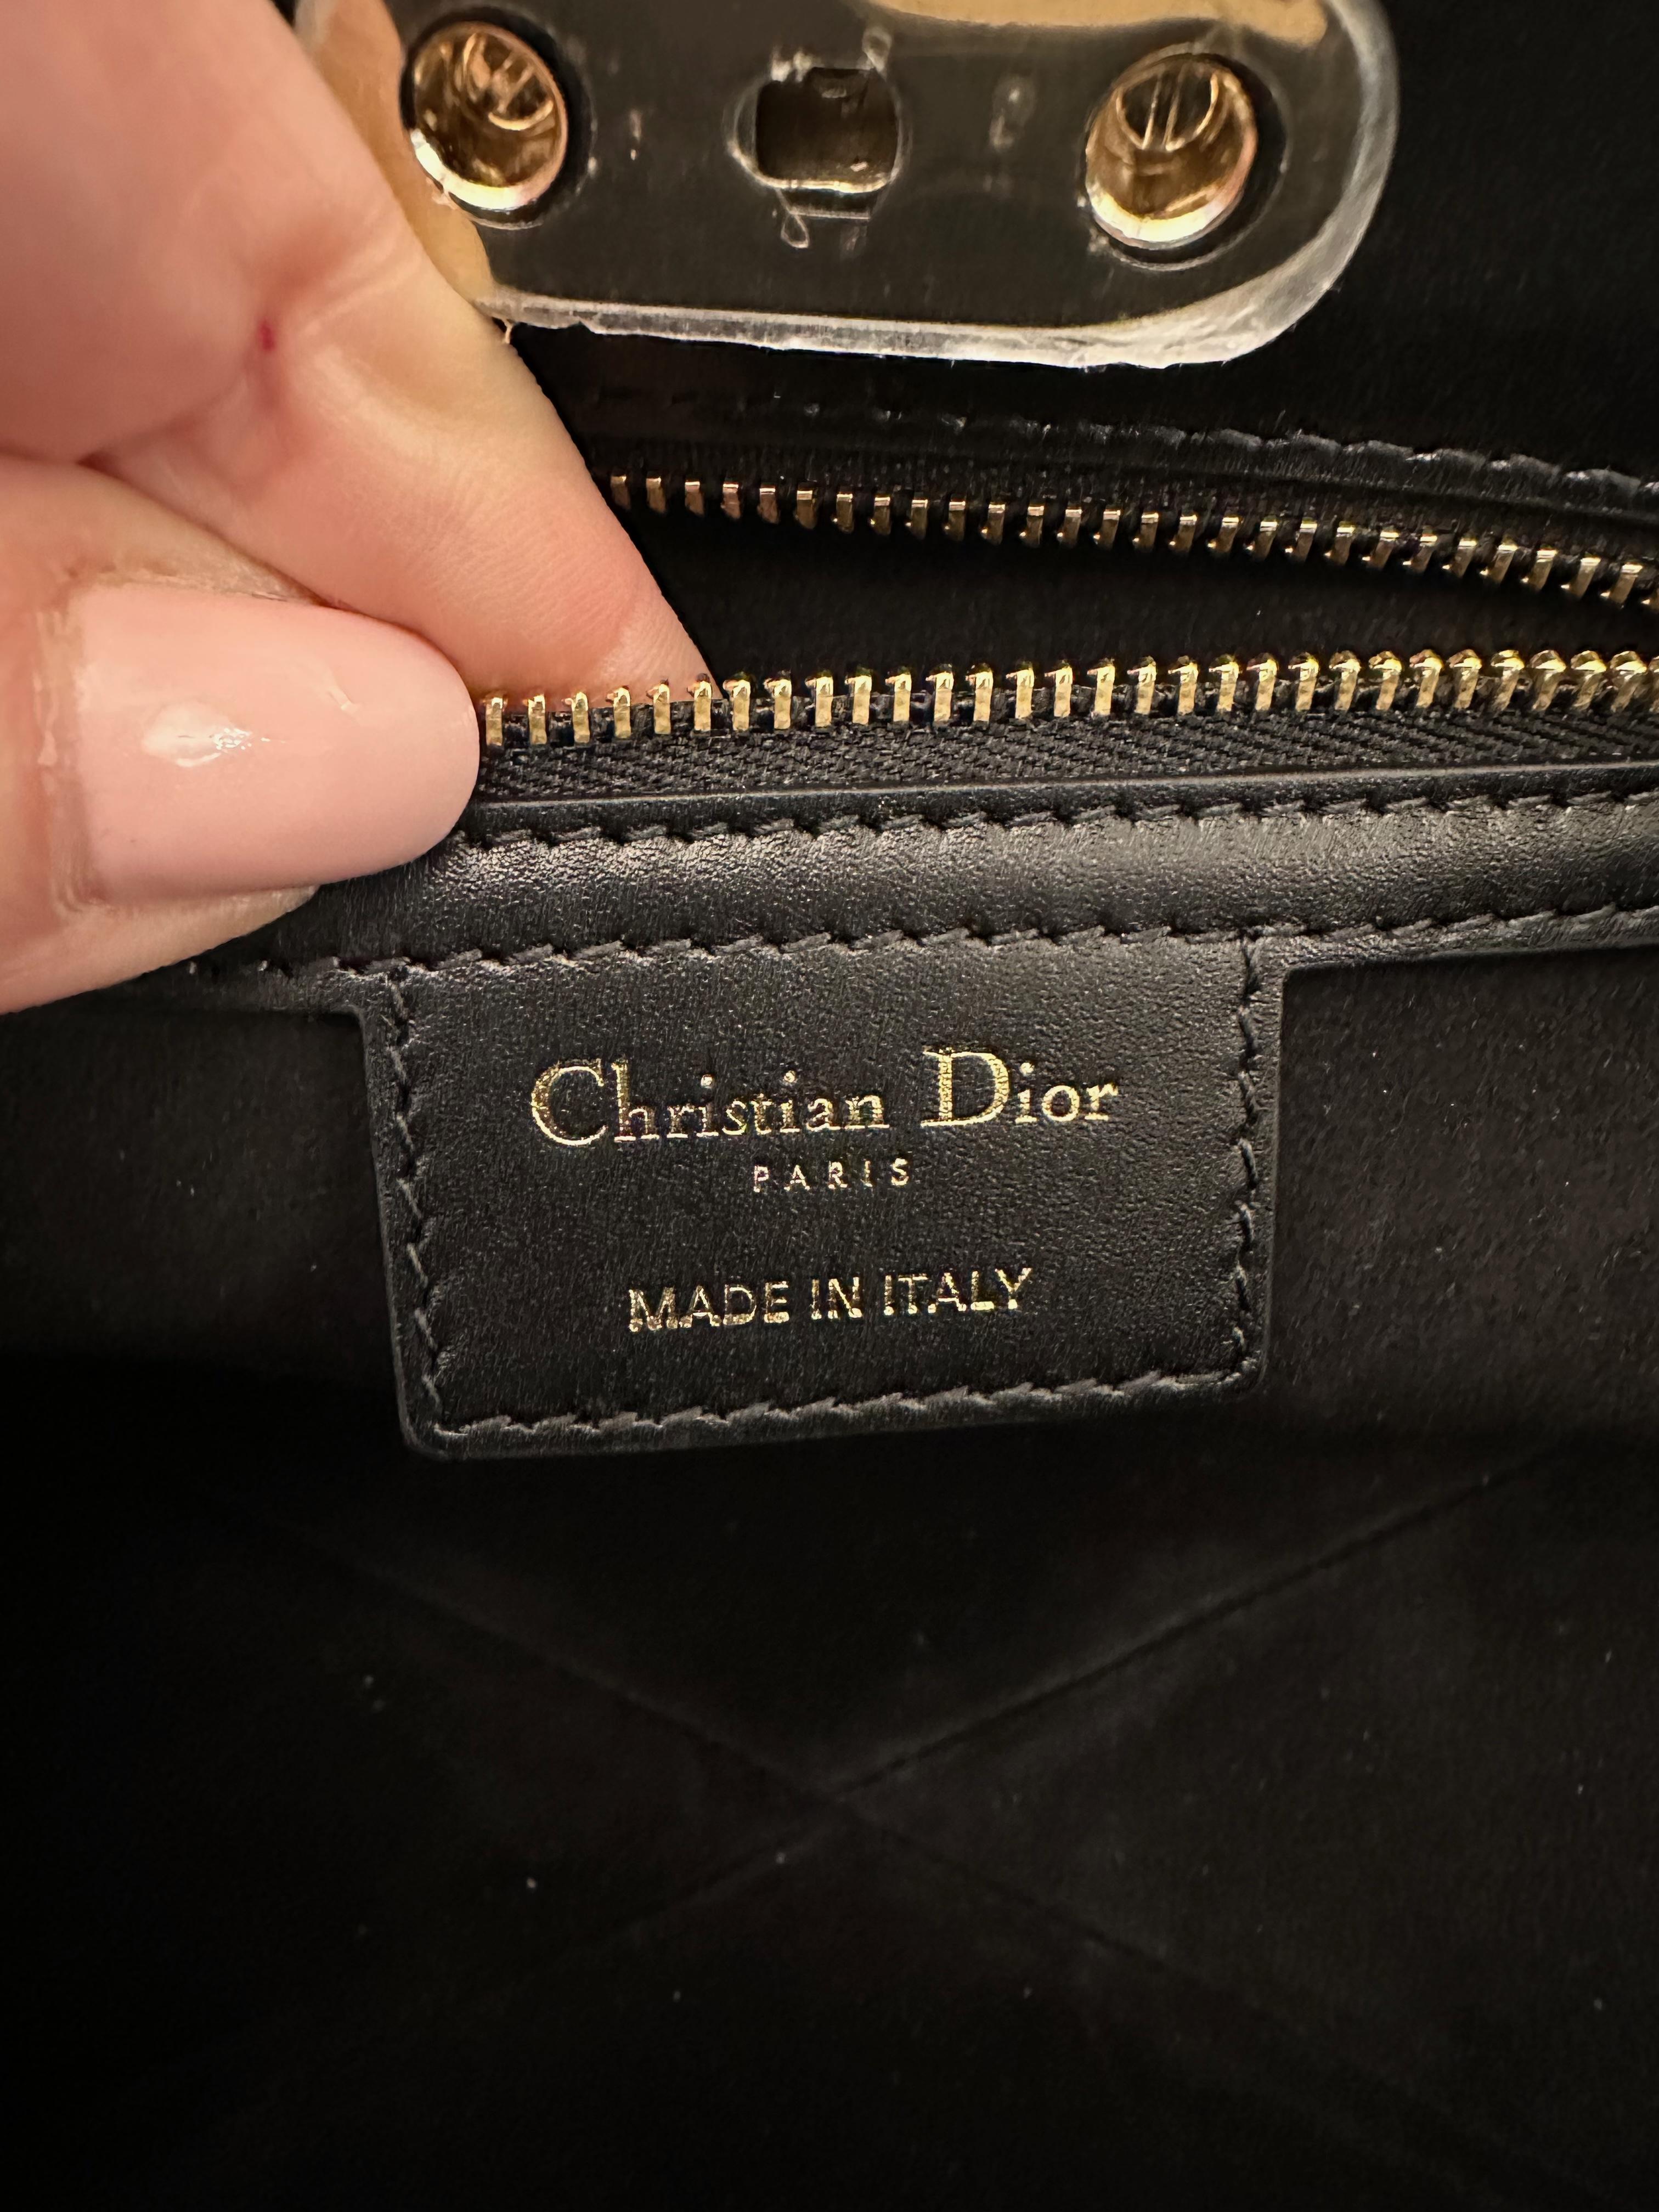 Inspiriert von den Archiven des Hauses Christian Dior ist diese Dior Key Tasche aus schwarzem Kalbsleder gefertigt.
Er verfügt über 2 Griffe, die das Tragen in der Hand oder über die Schulter ermöglichen. Der Verschluss soll an ein Schlüsselschloss